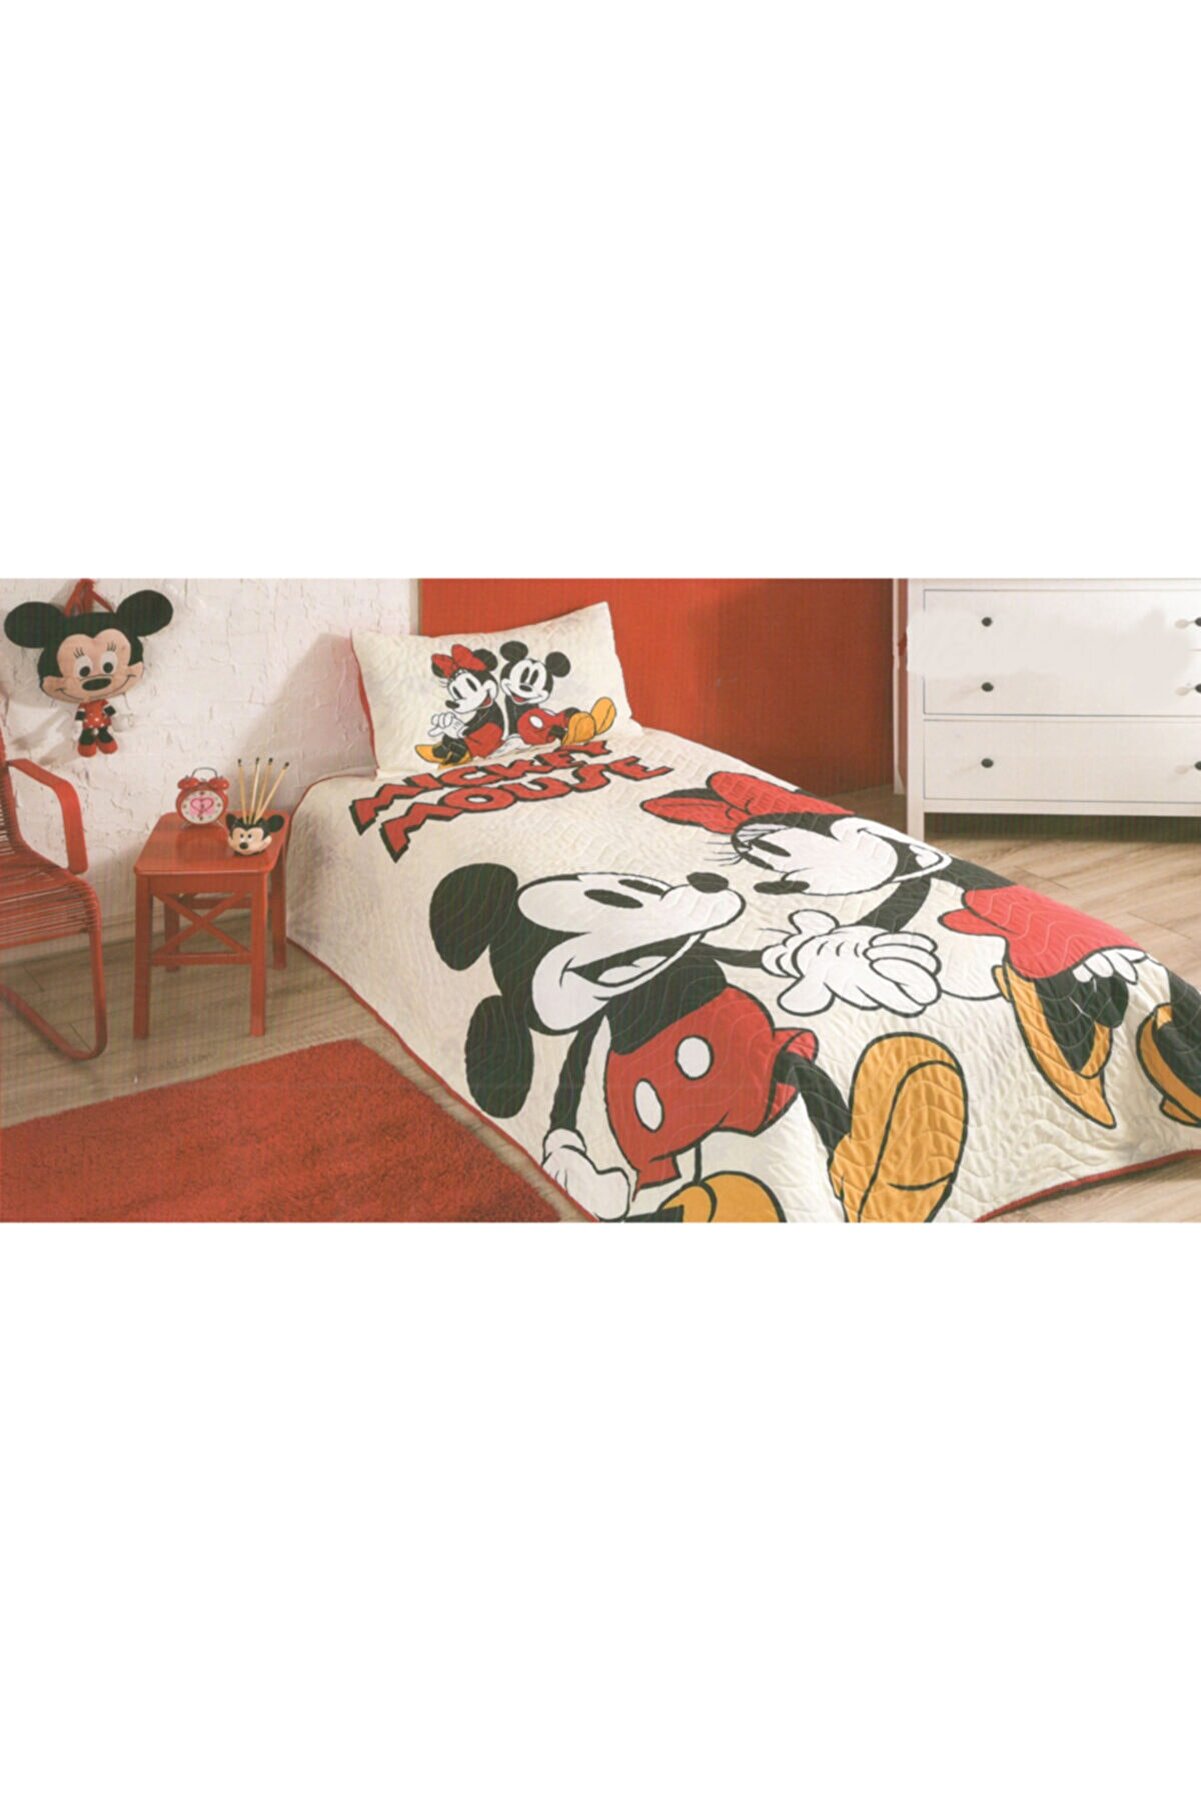 Özdilek Mickey Mouse Lovely Lisanslı Tek Kişilik Yatak Örtüsü Takımı Yatak Örtüsü